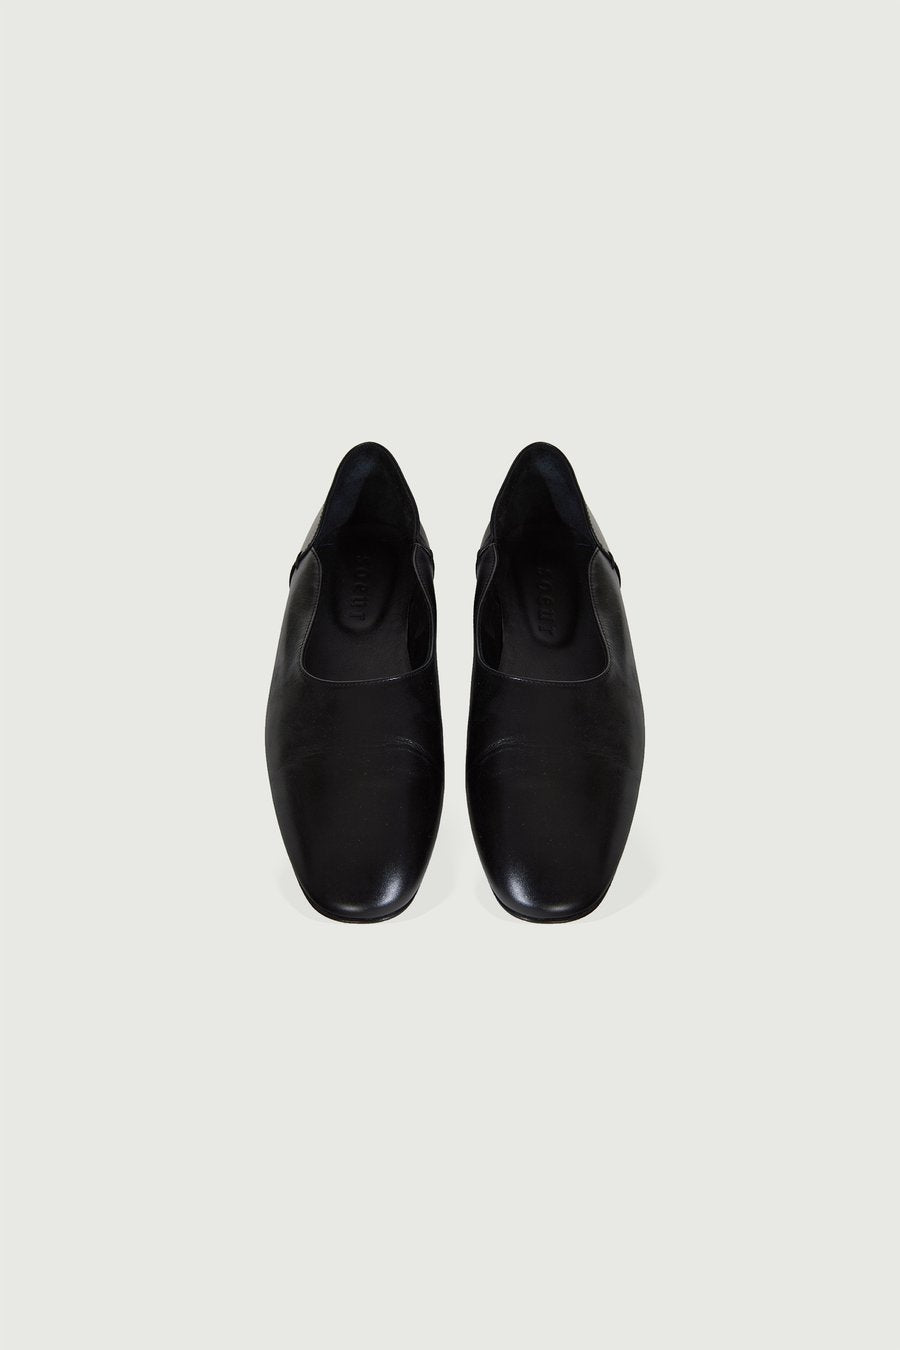 Orphee Shoes Noir